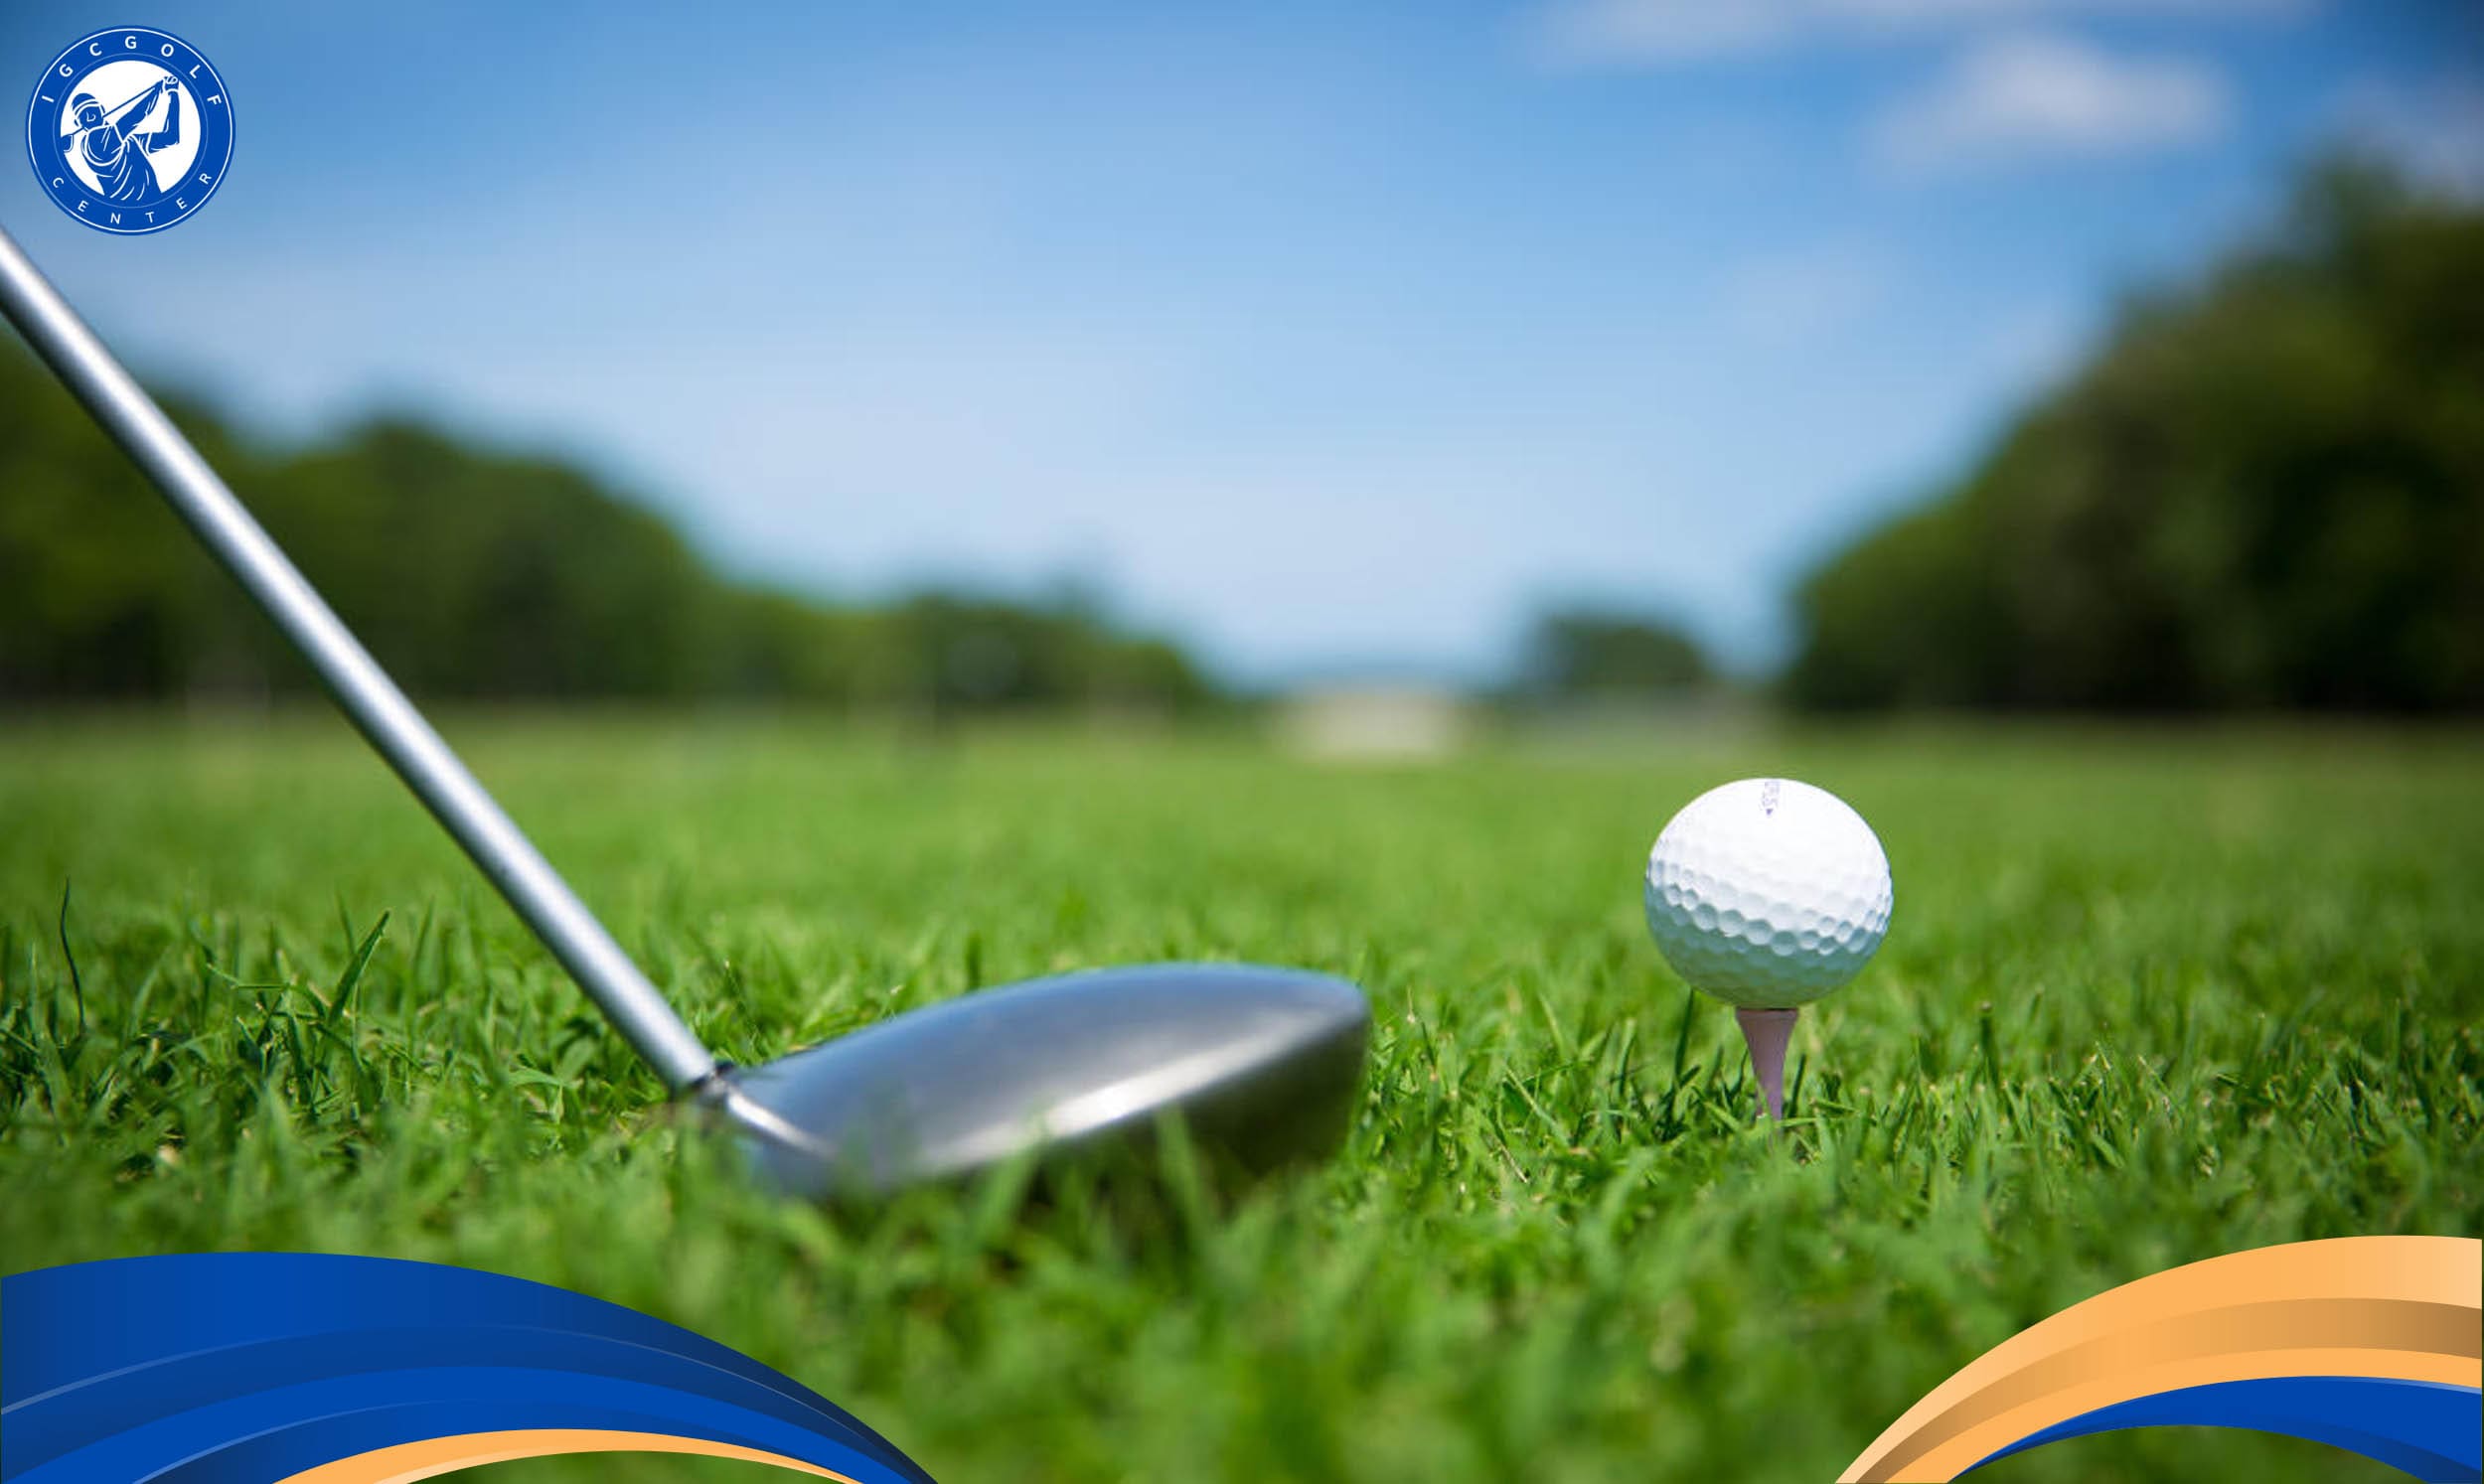 Một số mẹo giúp tối ưu chi phí tập chơi golf hiệu quả